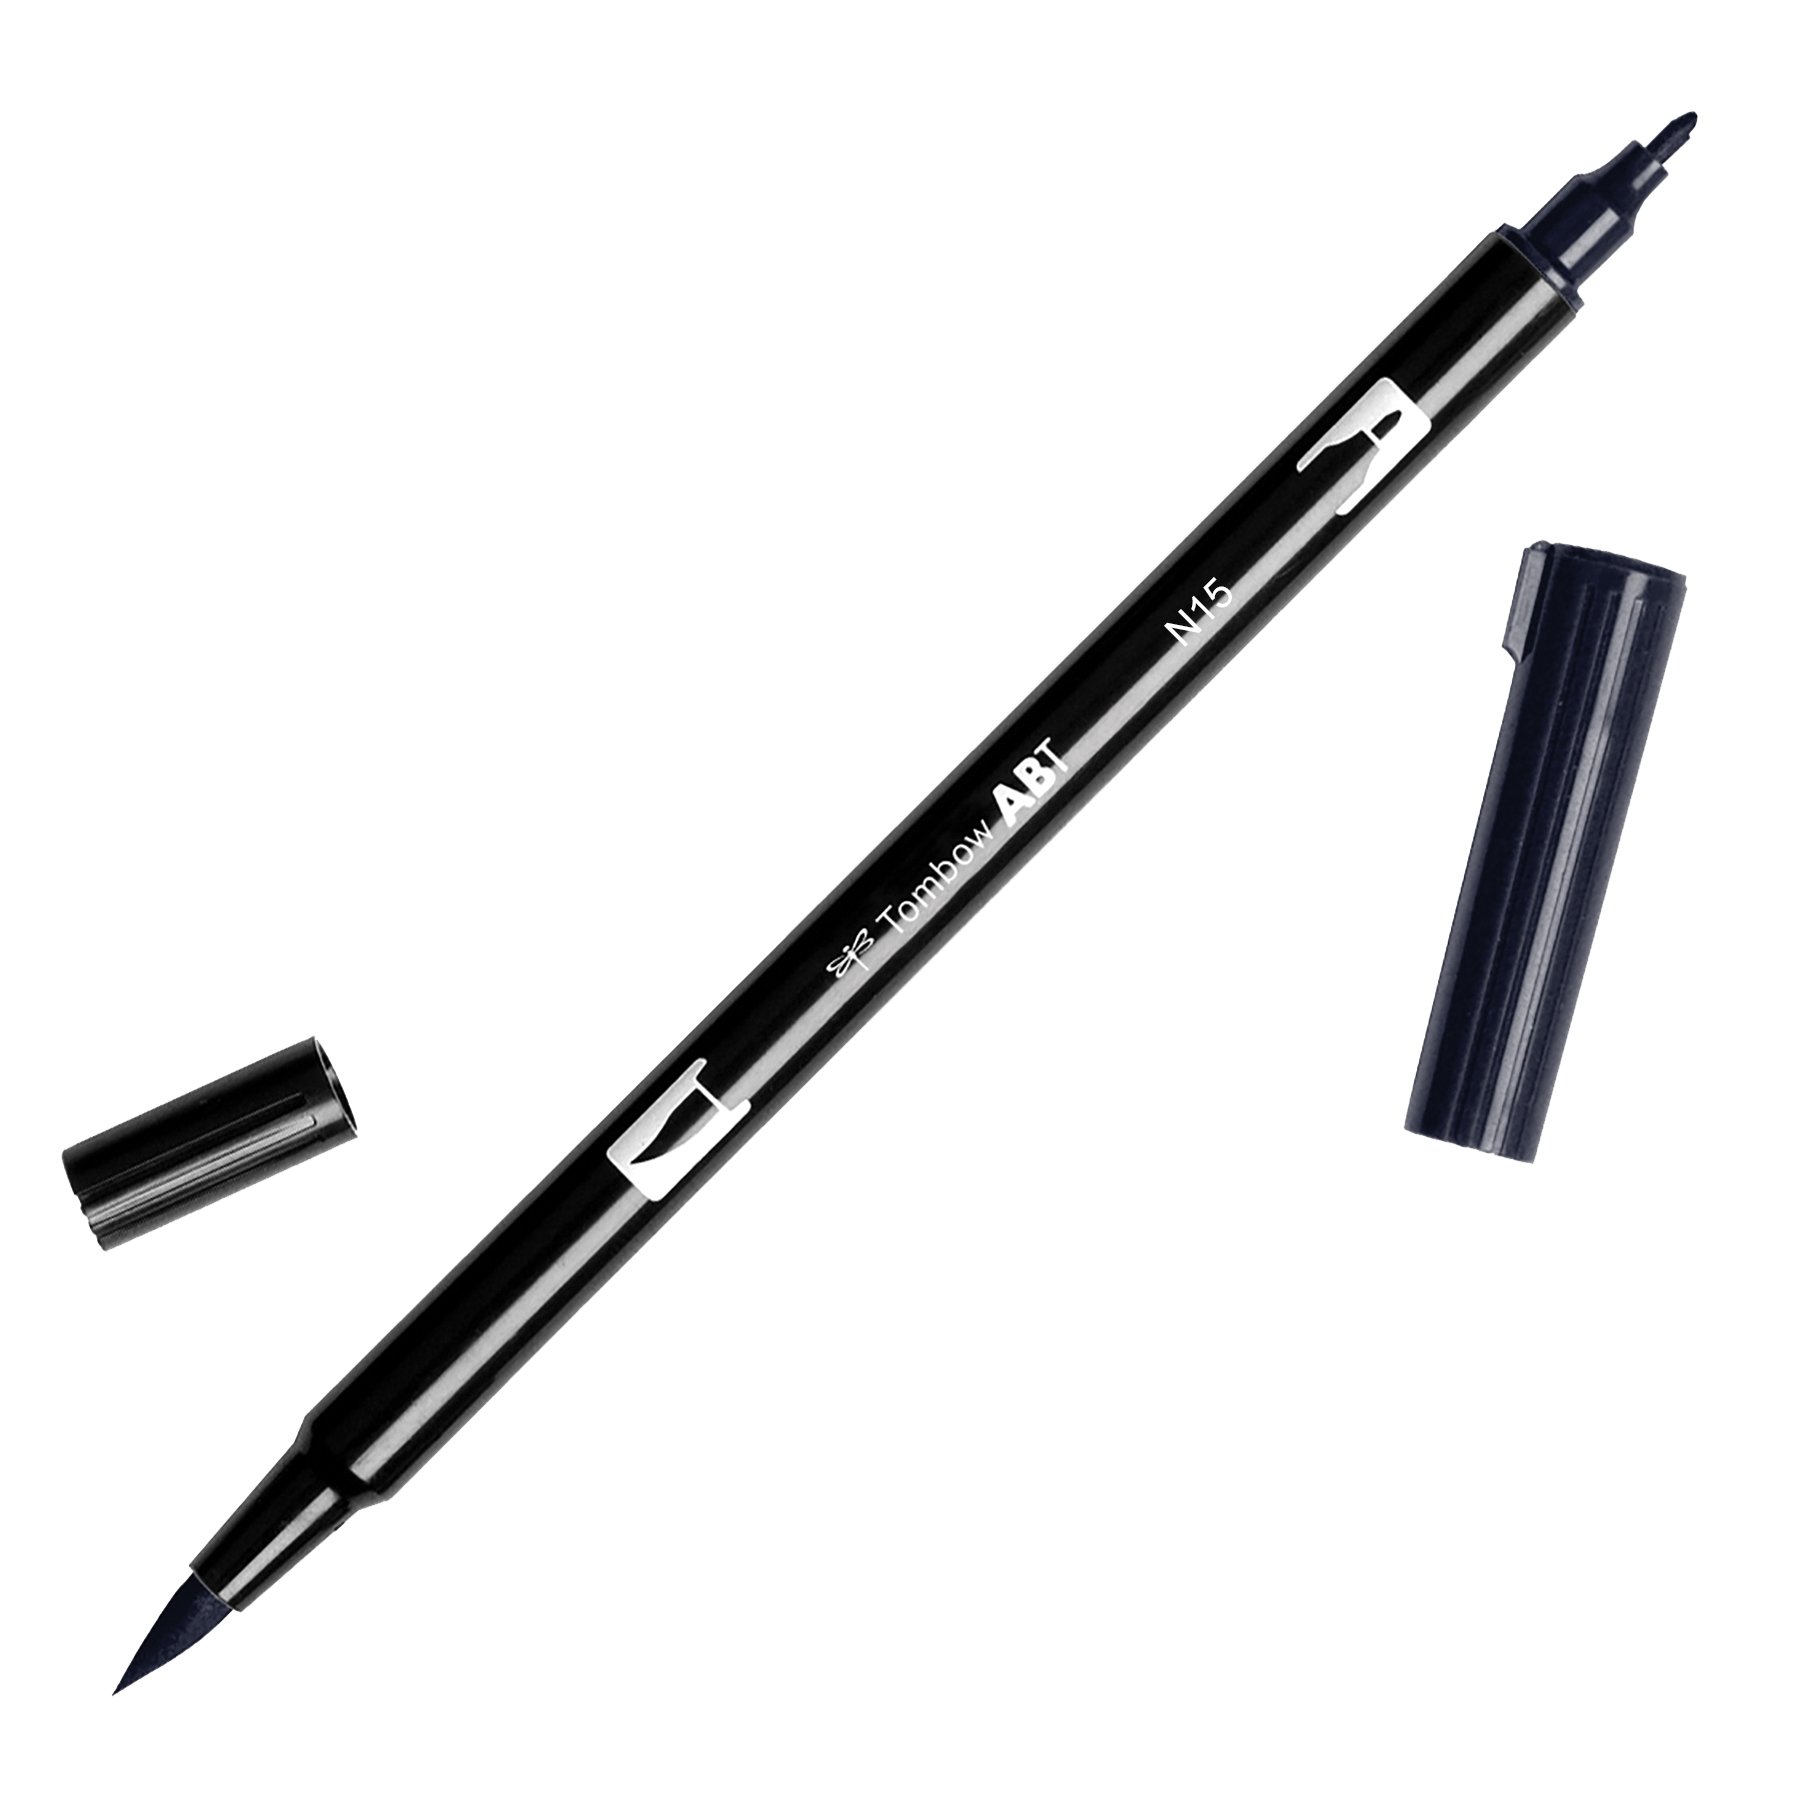 Book Cover Tombow 56621 Dual Brush Pen, N15 - Black, 1-Pack. Blendable, Brush and Fine Tip Marker Black 1 PK